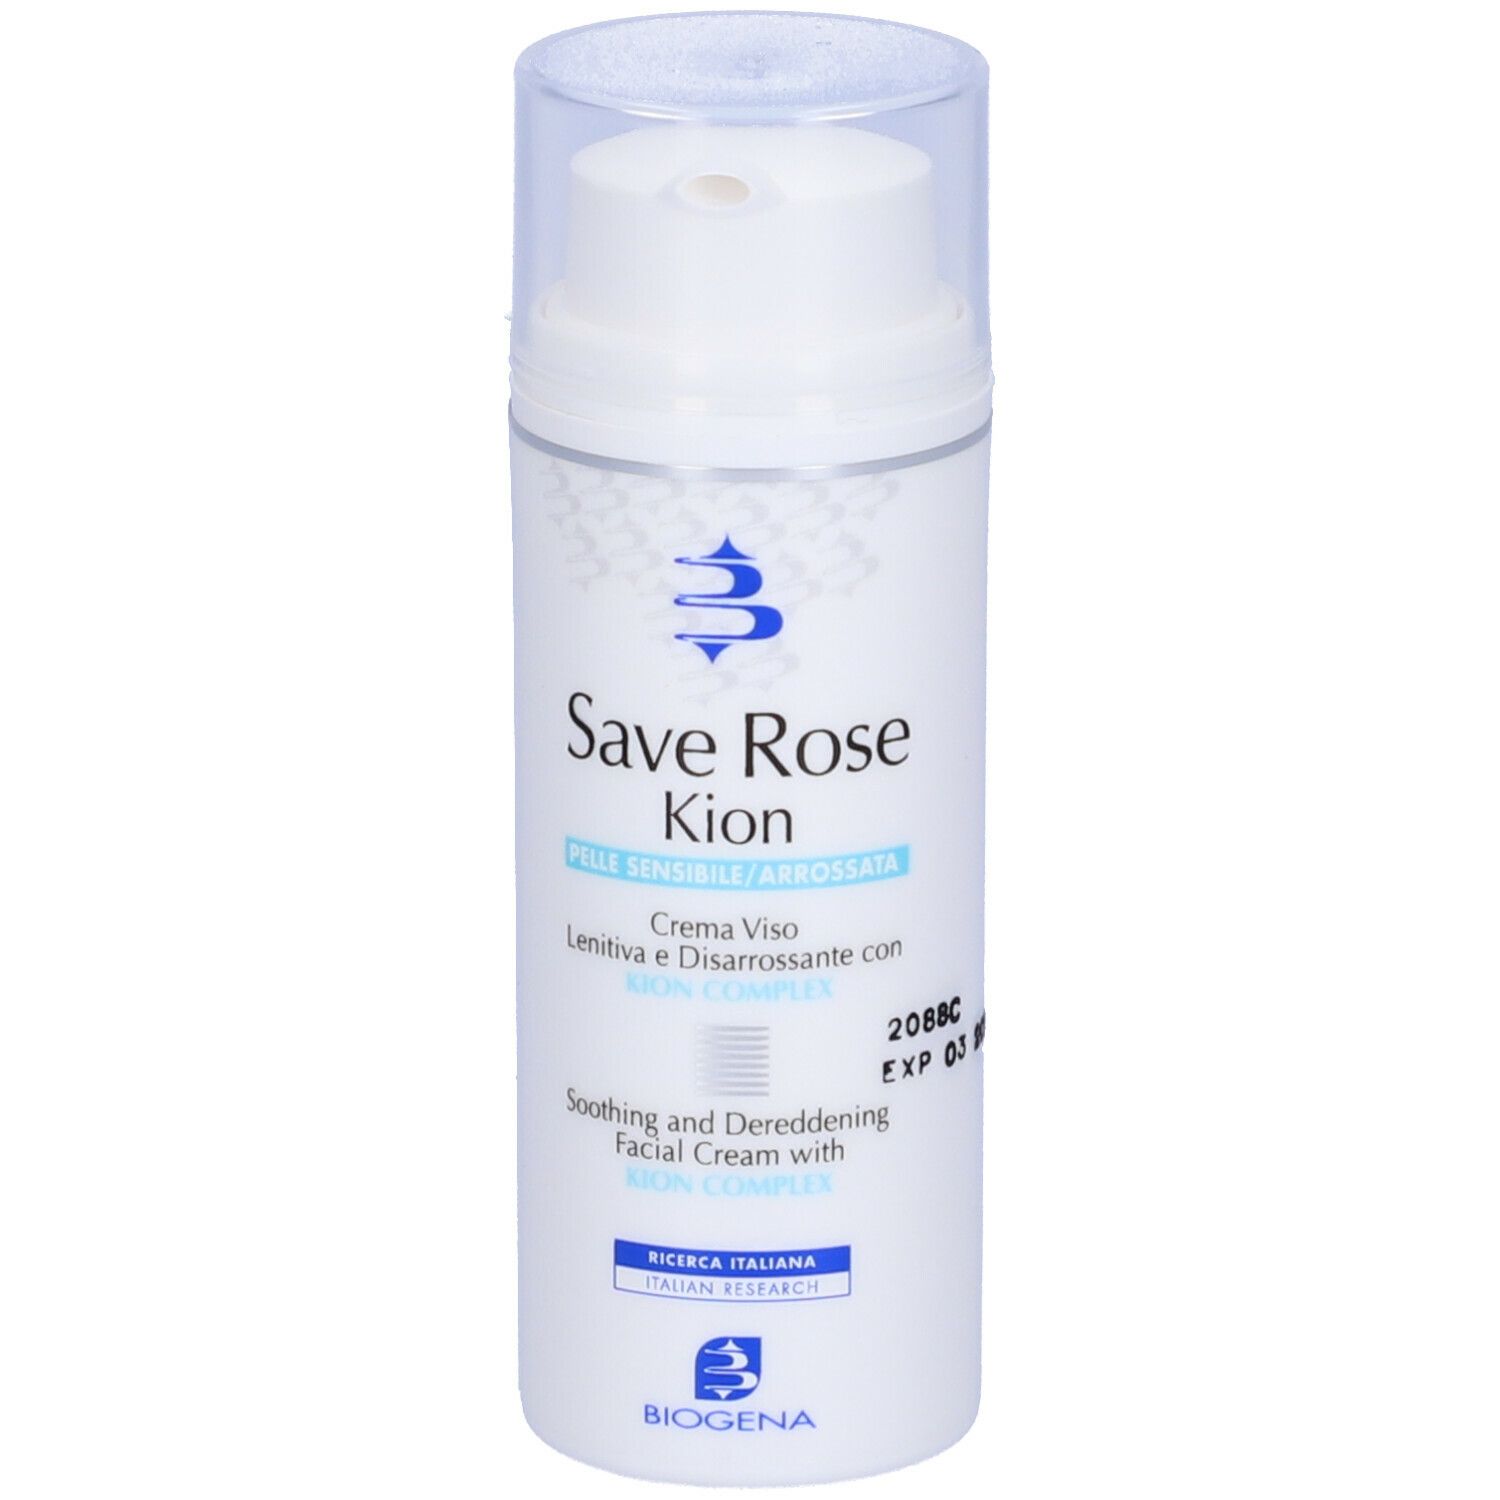 Save Rose Kion Crema Viso Lenitiva e Disarrossante con KION COMPLEX